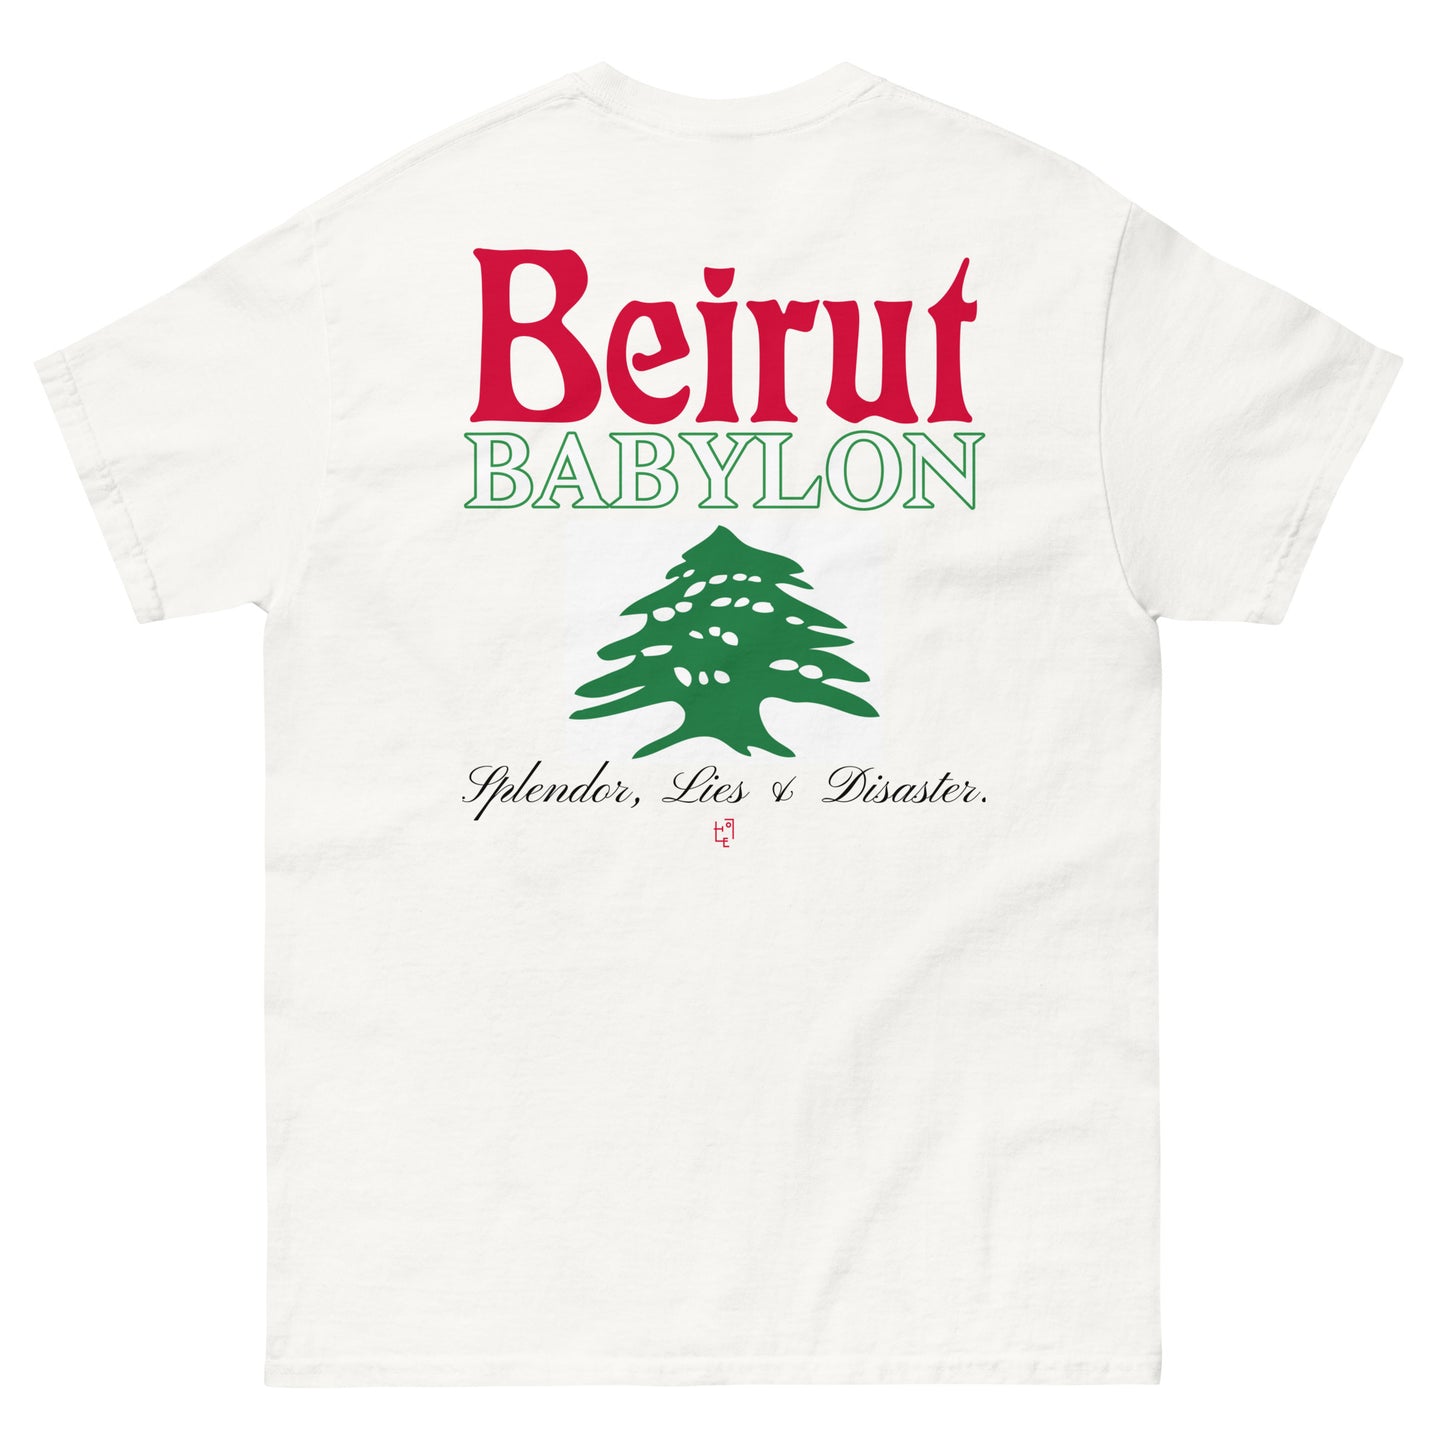 Beirut Babylon DELUXE T